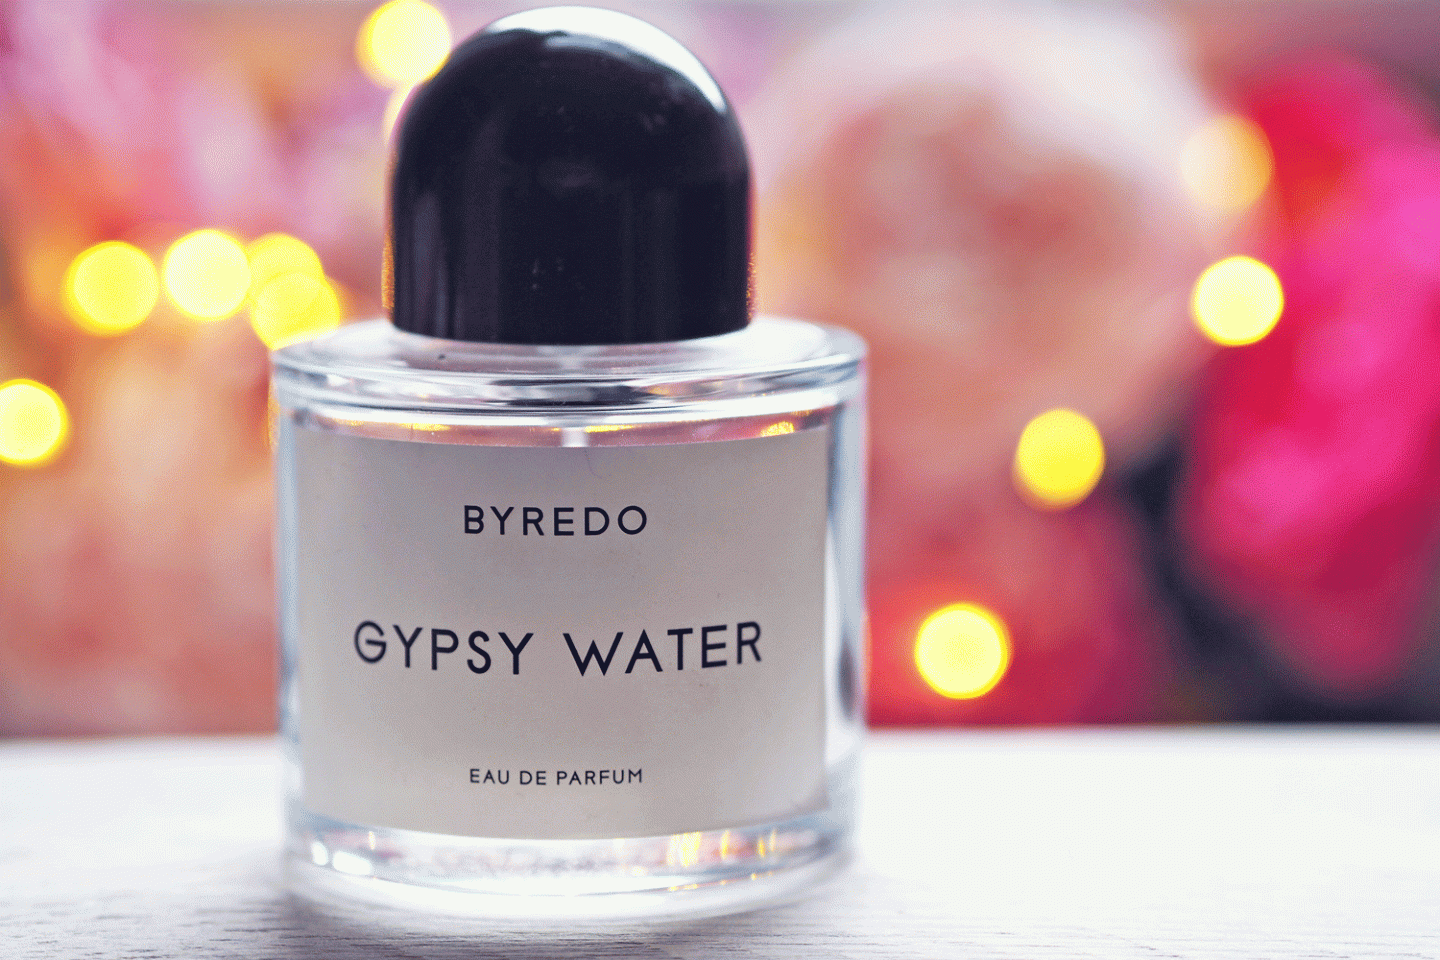 BYREDO GYPSY WATER WEAR TEST REVIEW, VS